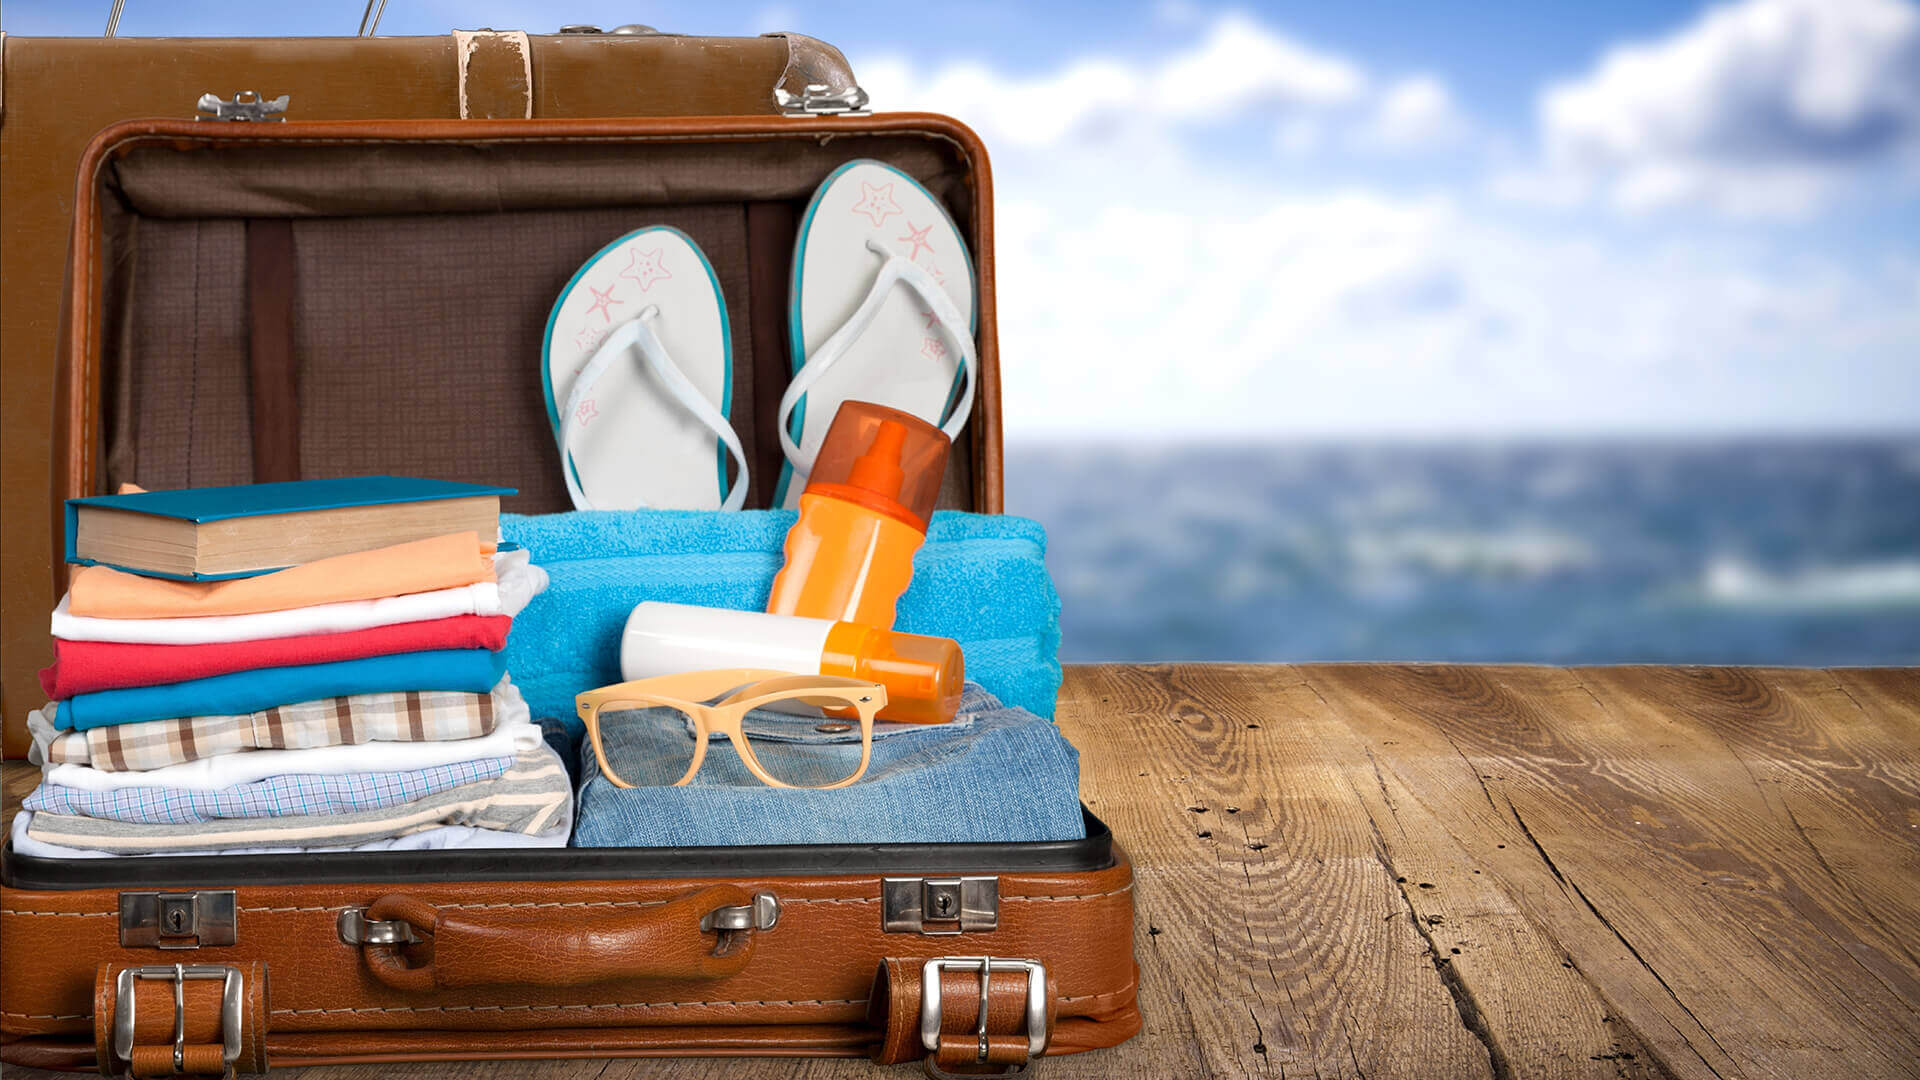 Travelling is expensive. Чемодан путешественника. Чемодан на море. Отпуск чемодан. Чемодан с вещами.